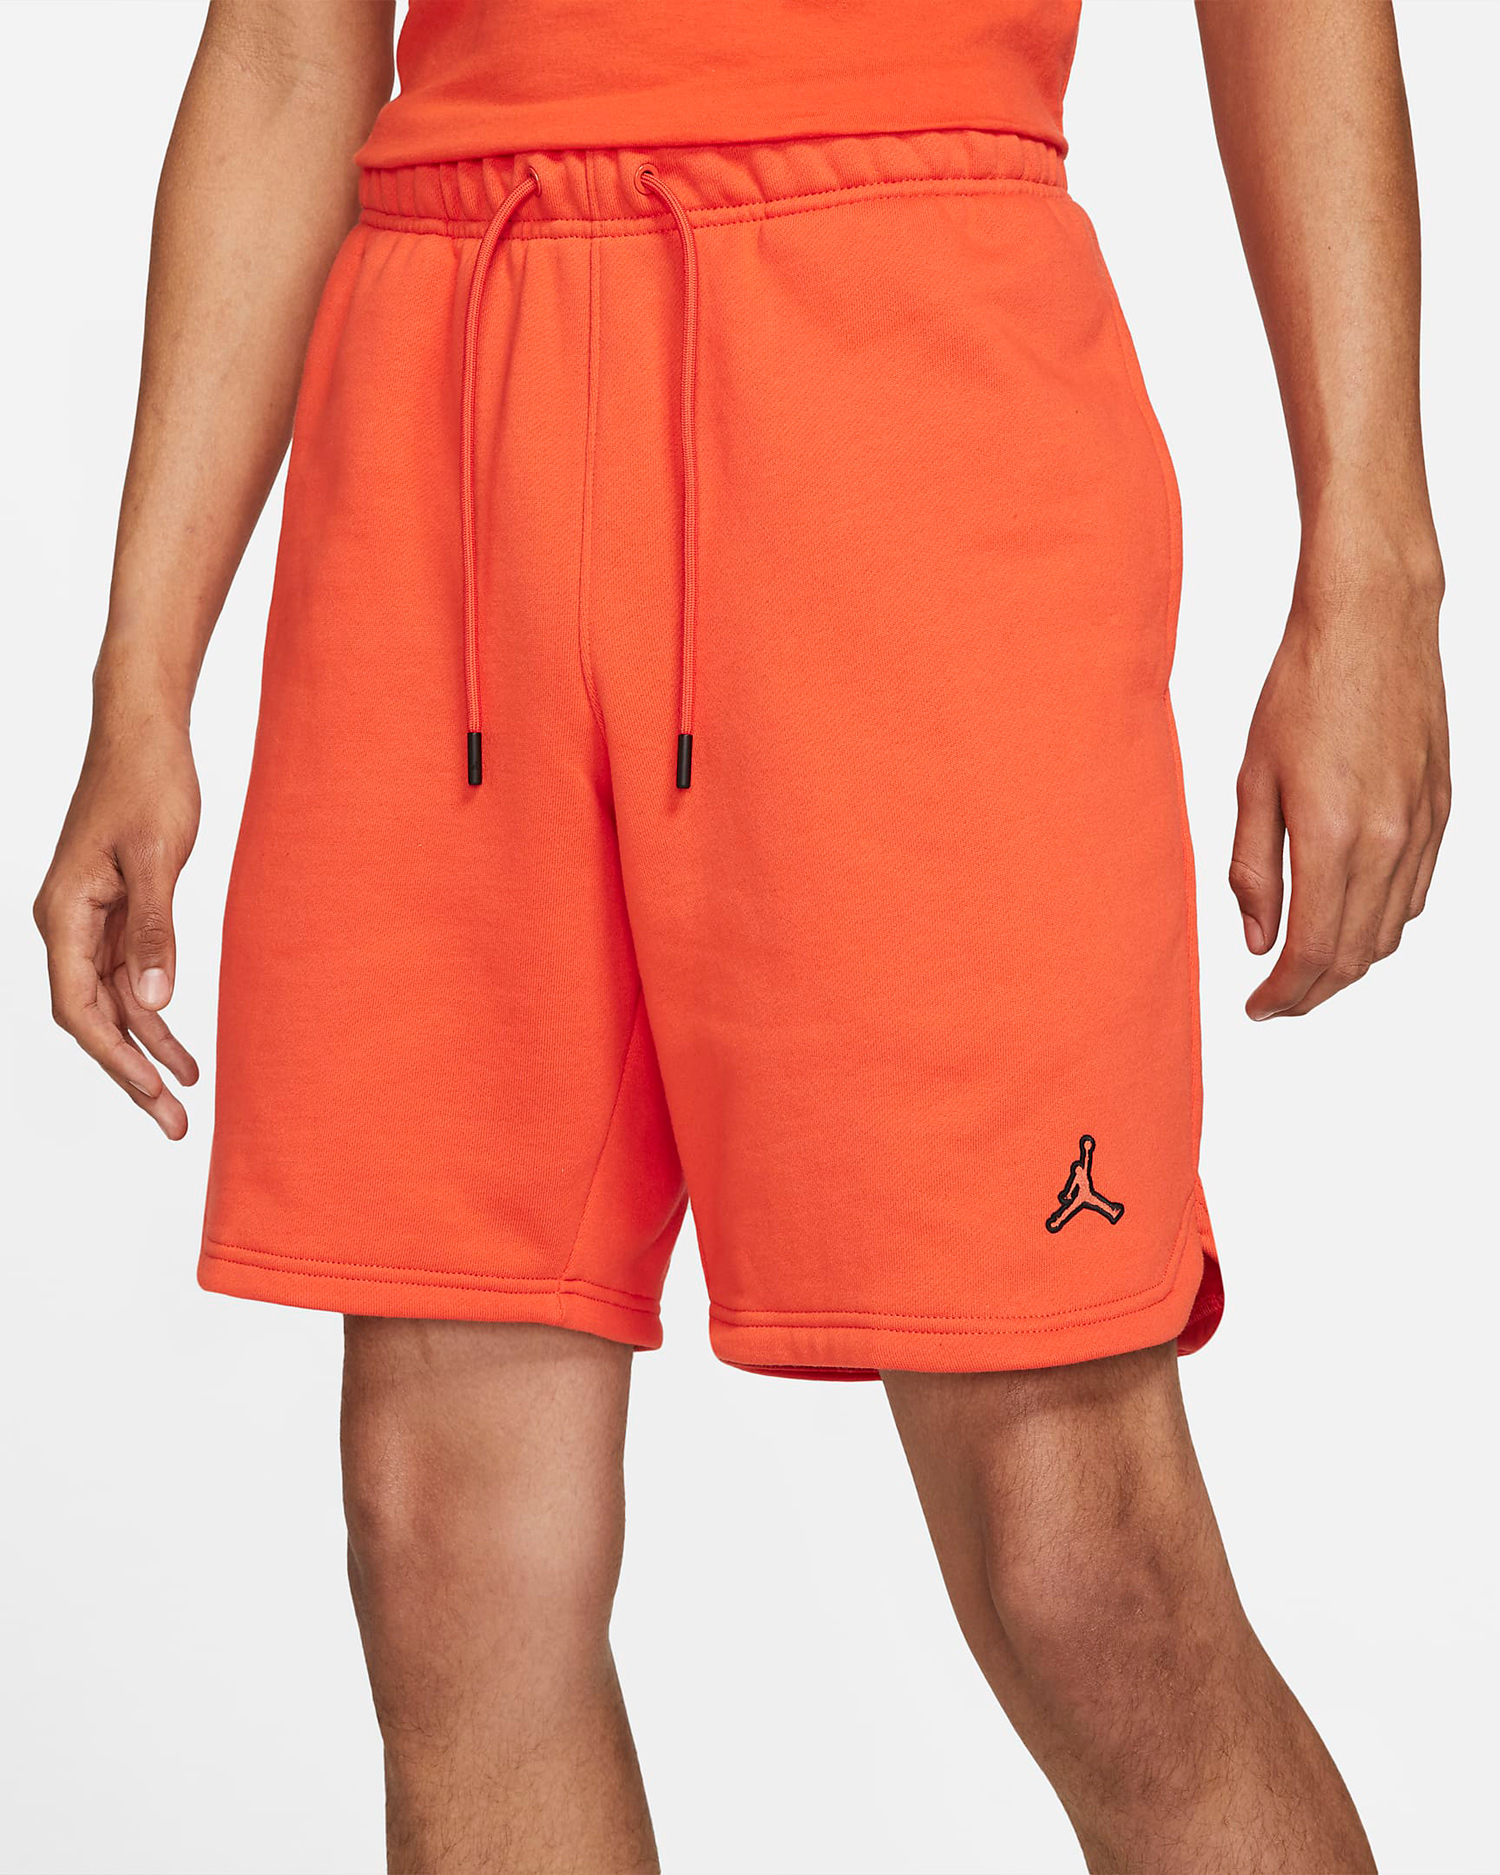 jordan-electro-orange-shorts-1